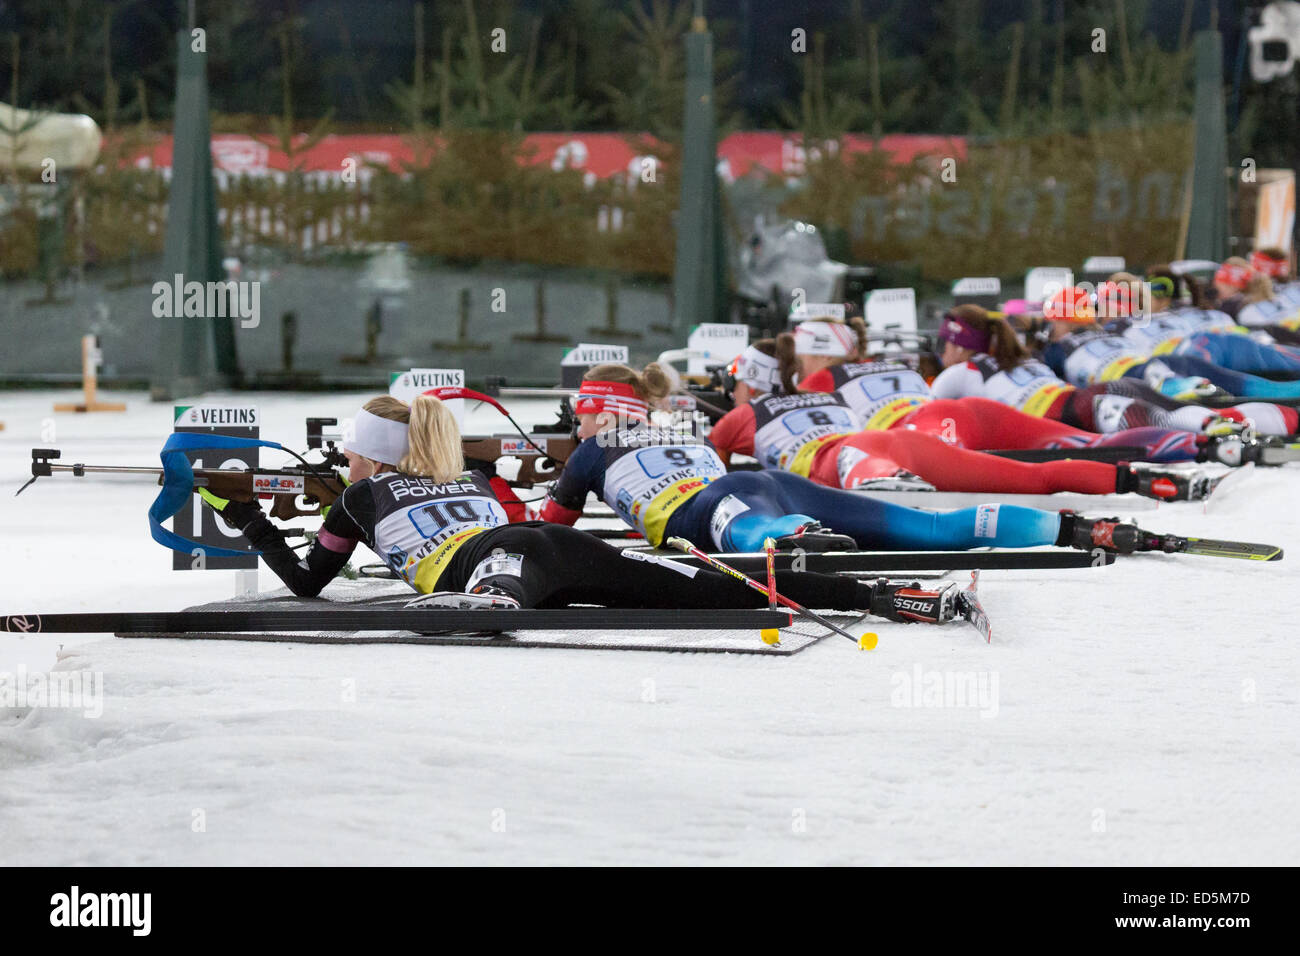 Gelsenkirchen-Schalke, Allemagne. 27 Décembre, 2014. Les concurrents du monde de biathlon le défi d'équipe à la Veltins Arena tirer sur les cibles. Banque D'Images